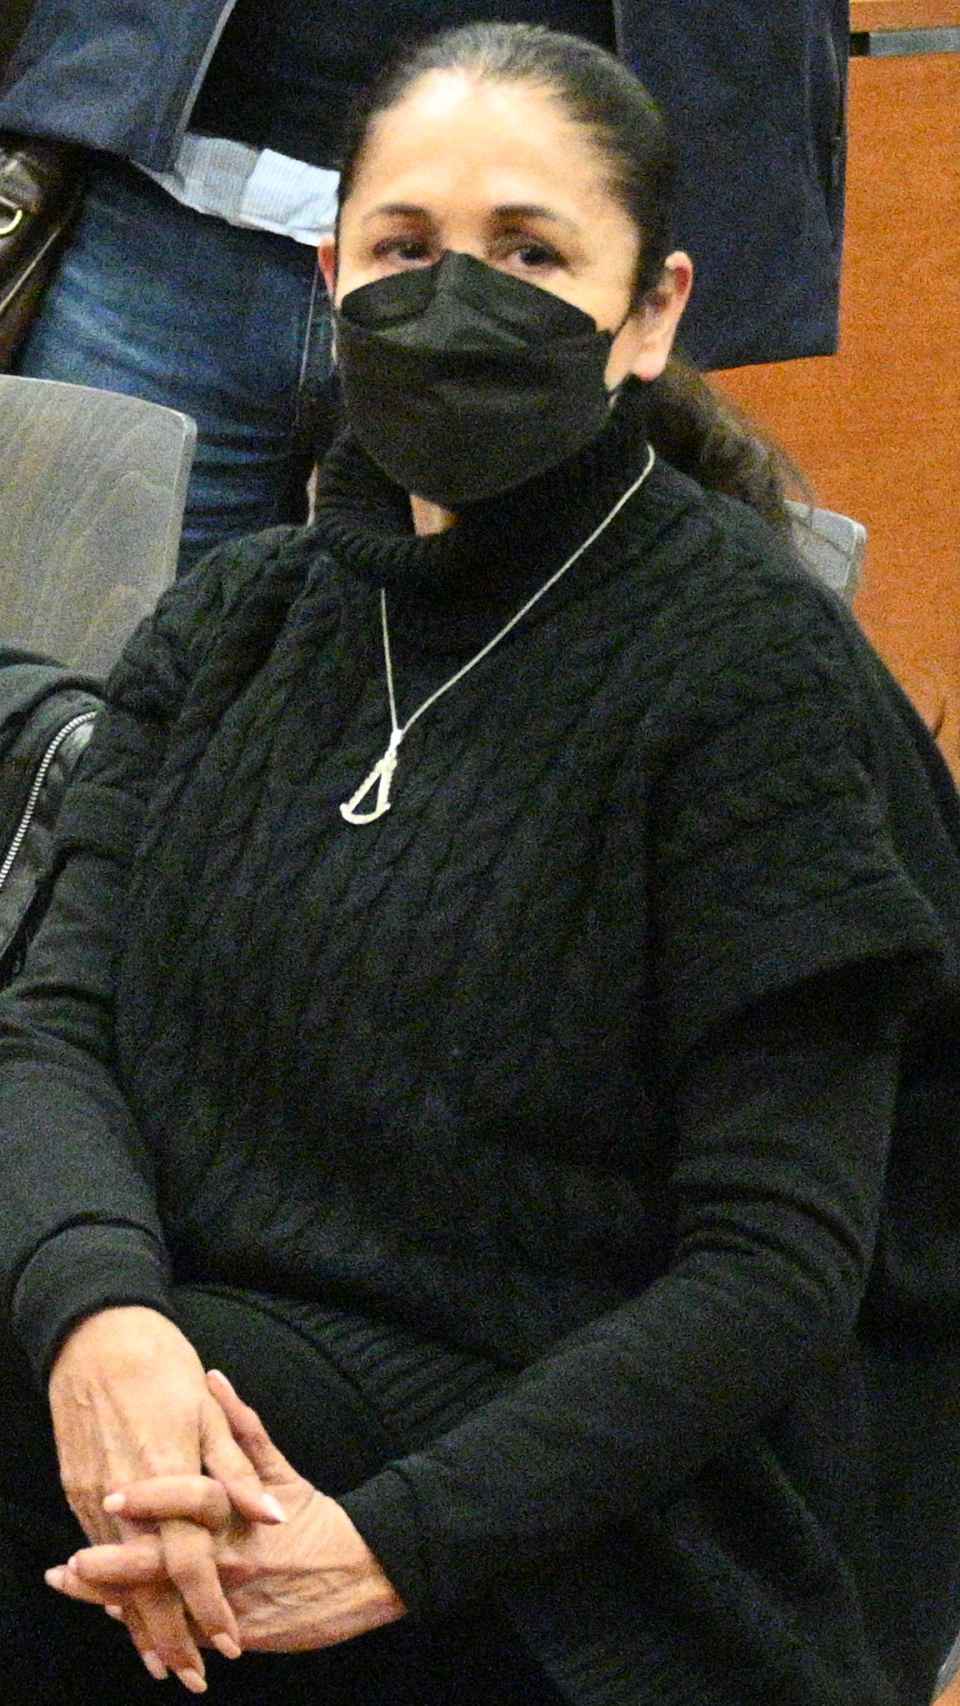 La cantante Isabel Pantoja, minutos antes de declarar ante el juez mientras los fotógrafos la graban.